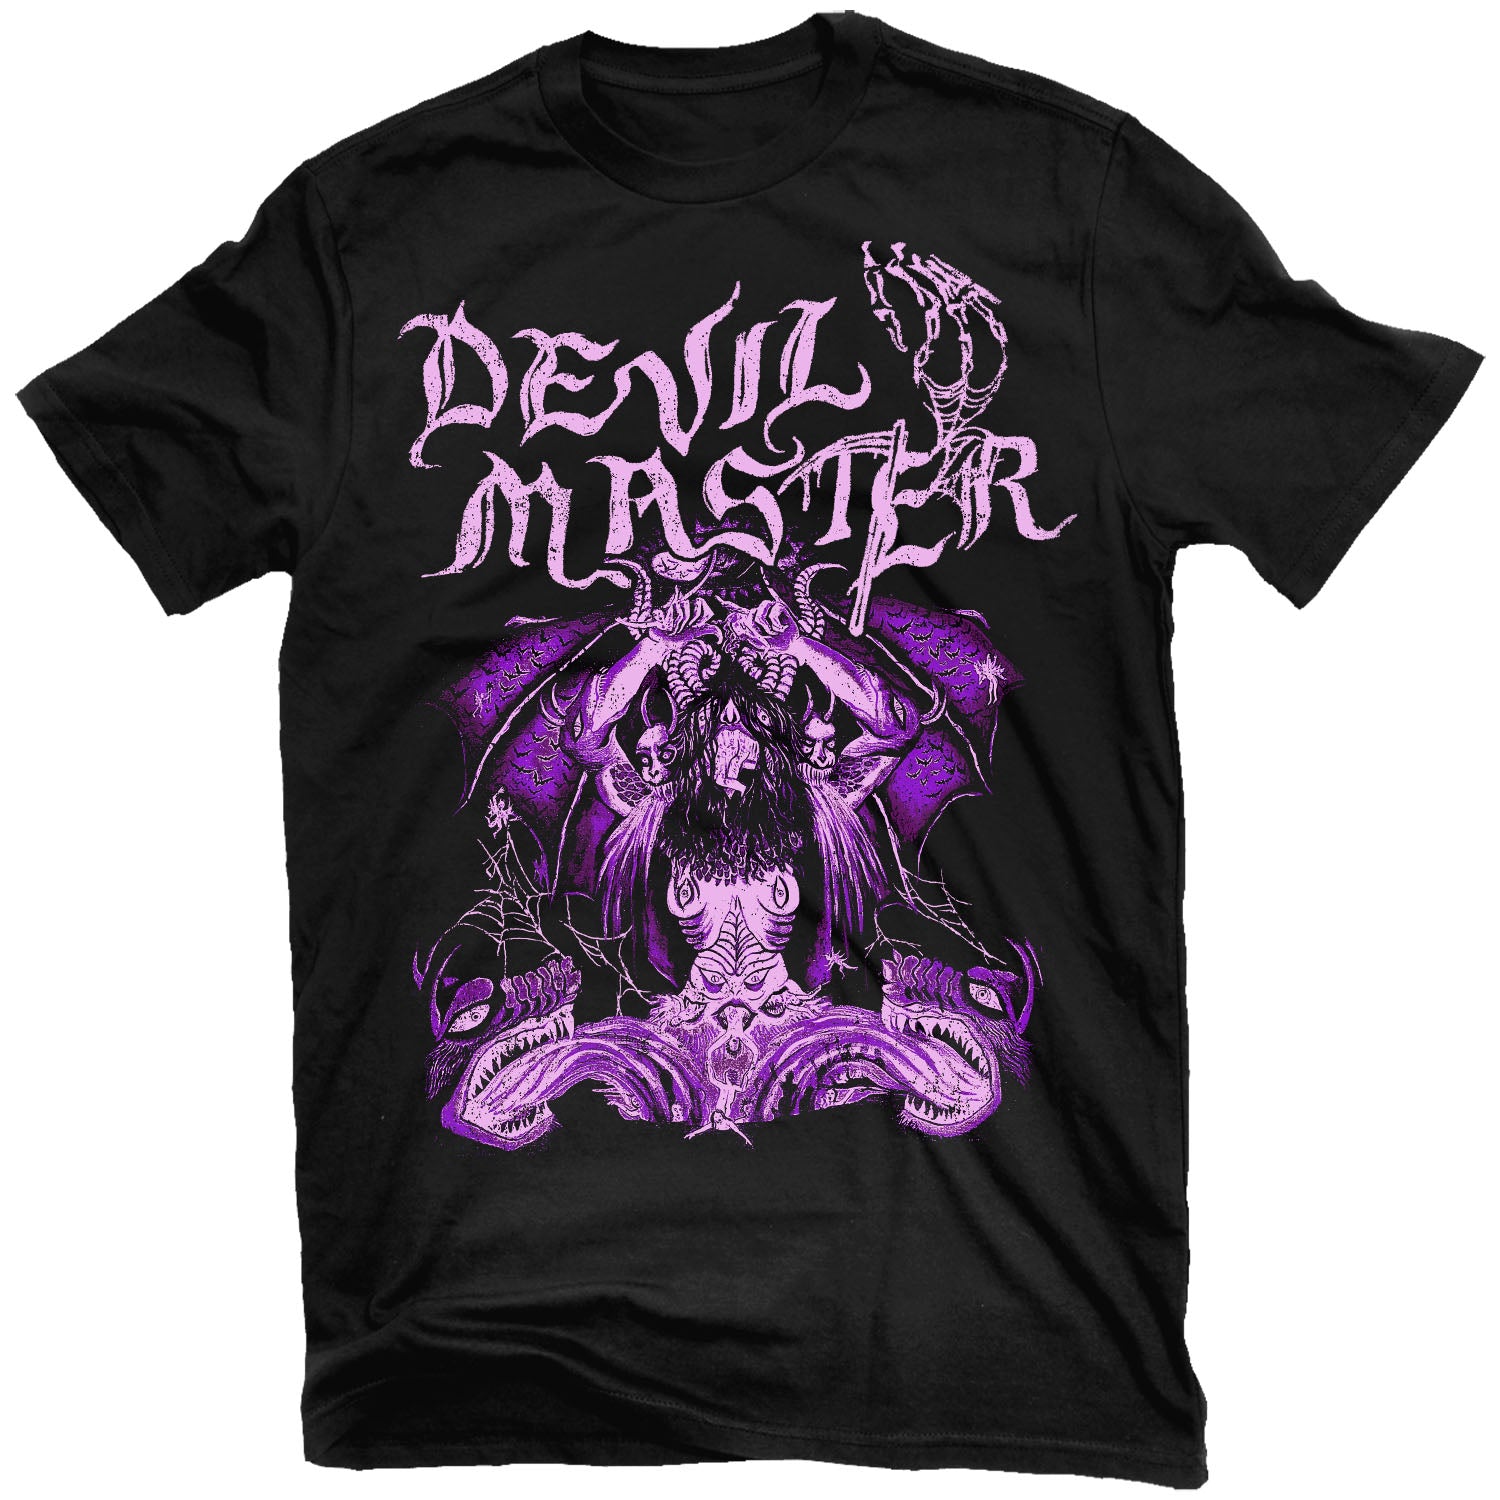 Devil Master "Satan Spits on Children of Light" T-Shirt